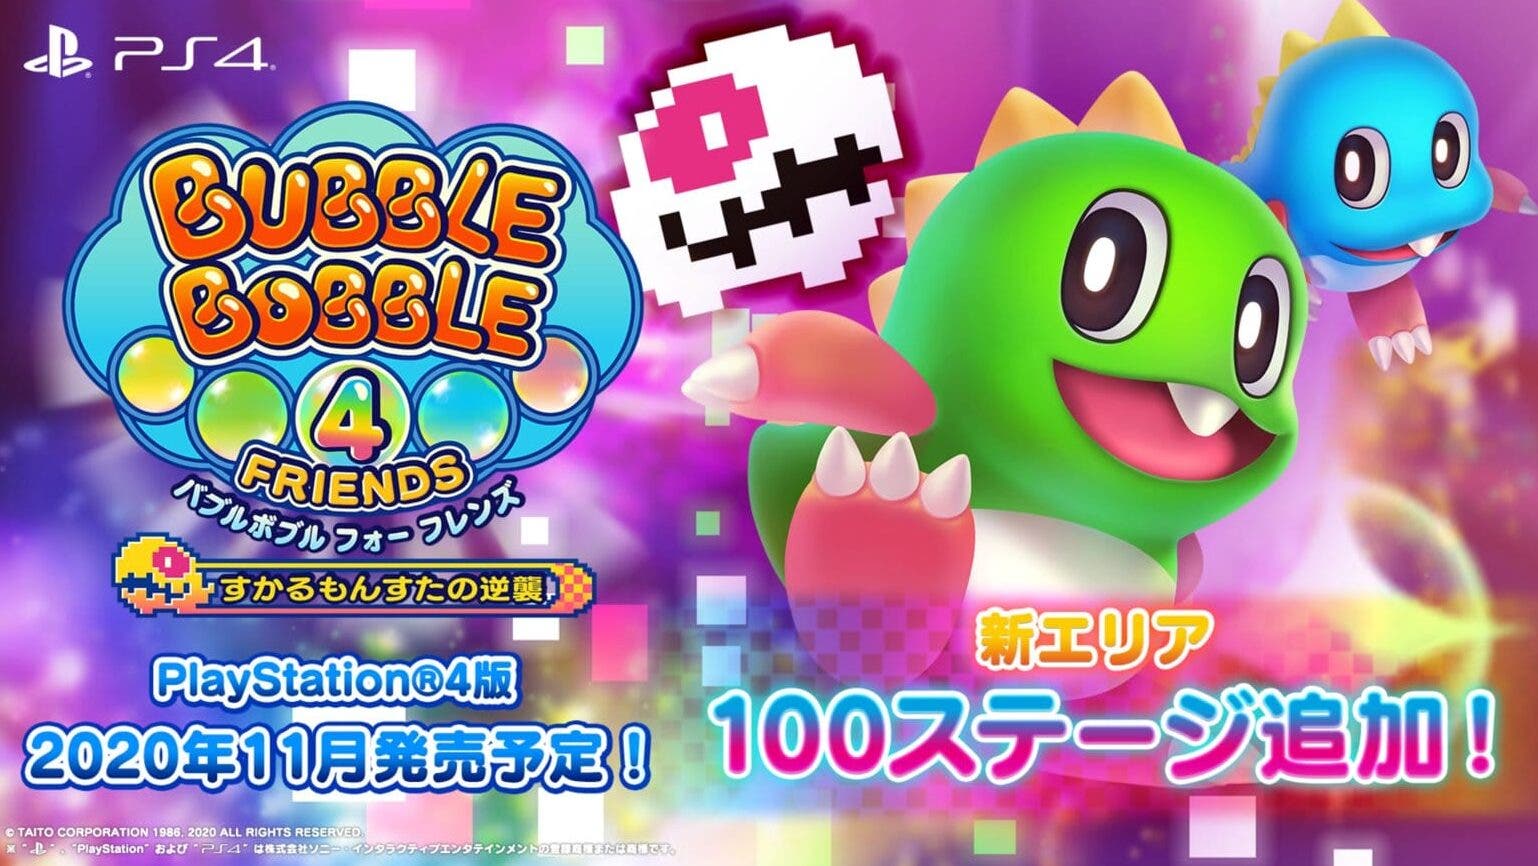 Bubble Bobble 4 Friends añadirá mediante una actualización gratuita 100 nuevos niveles